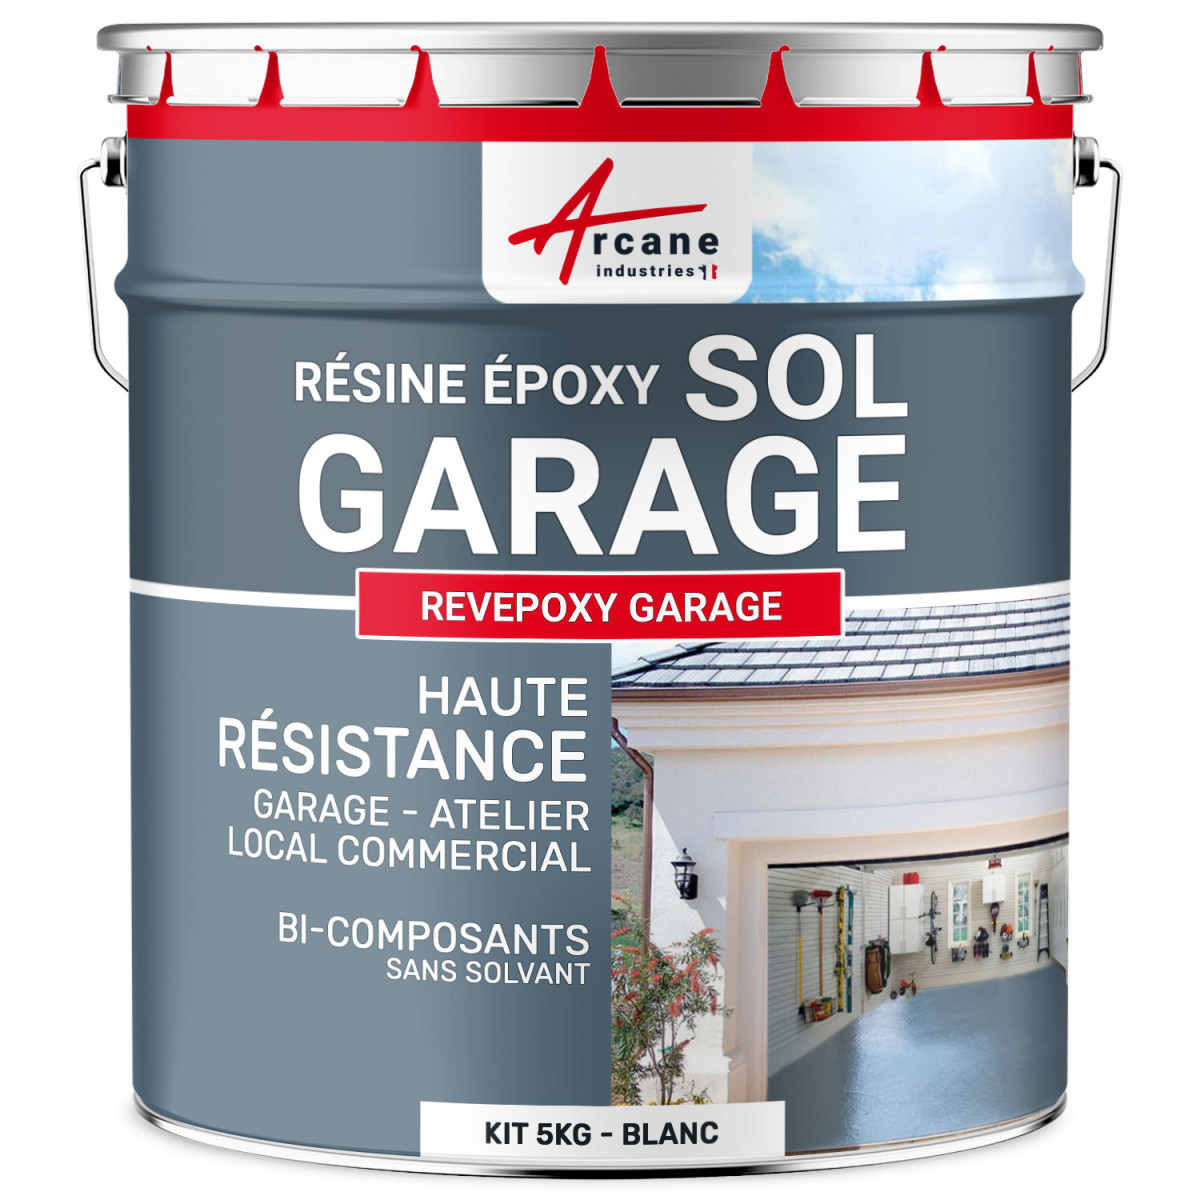 Résine de sol pour un garage - SDO Electro Peinture